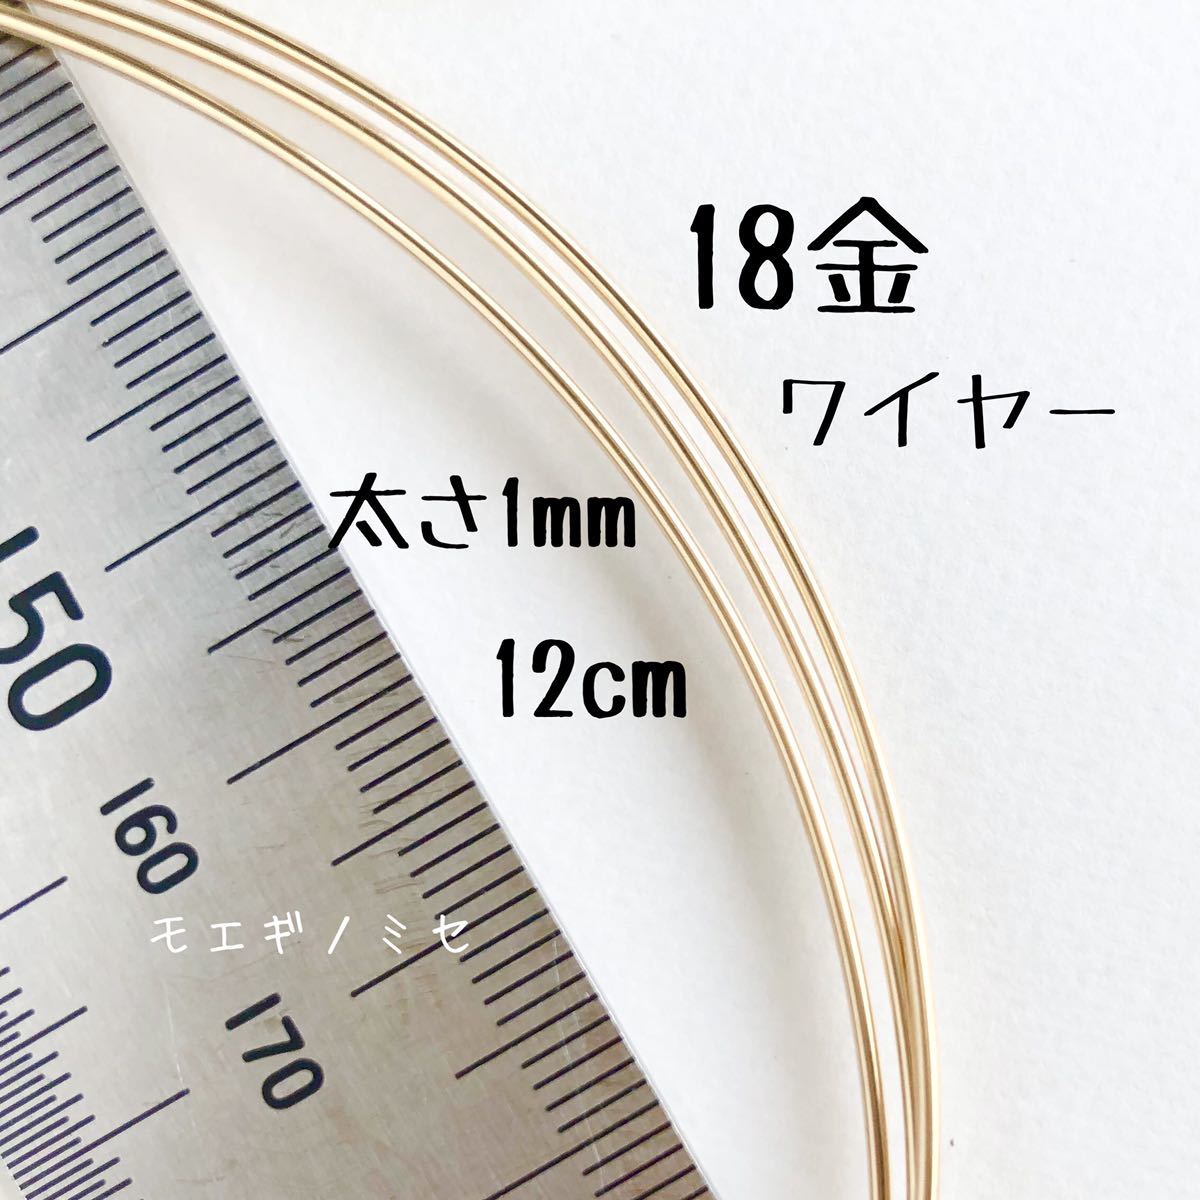 Alambre de 18K de 1 mm, corte de 12 cm a la venta Material de alambre redondo K18 Hecho en Japón Material accesorio hecho a mano Alambre redondo cortado a la venta, artesanía, artesanías, Trabajo de perlas, Partes de metal